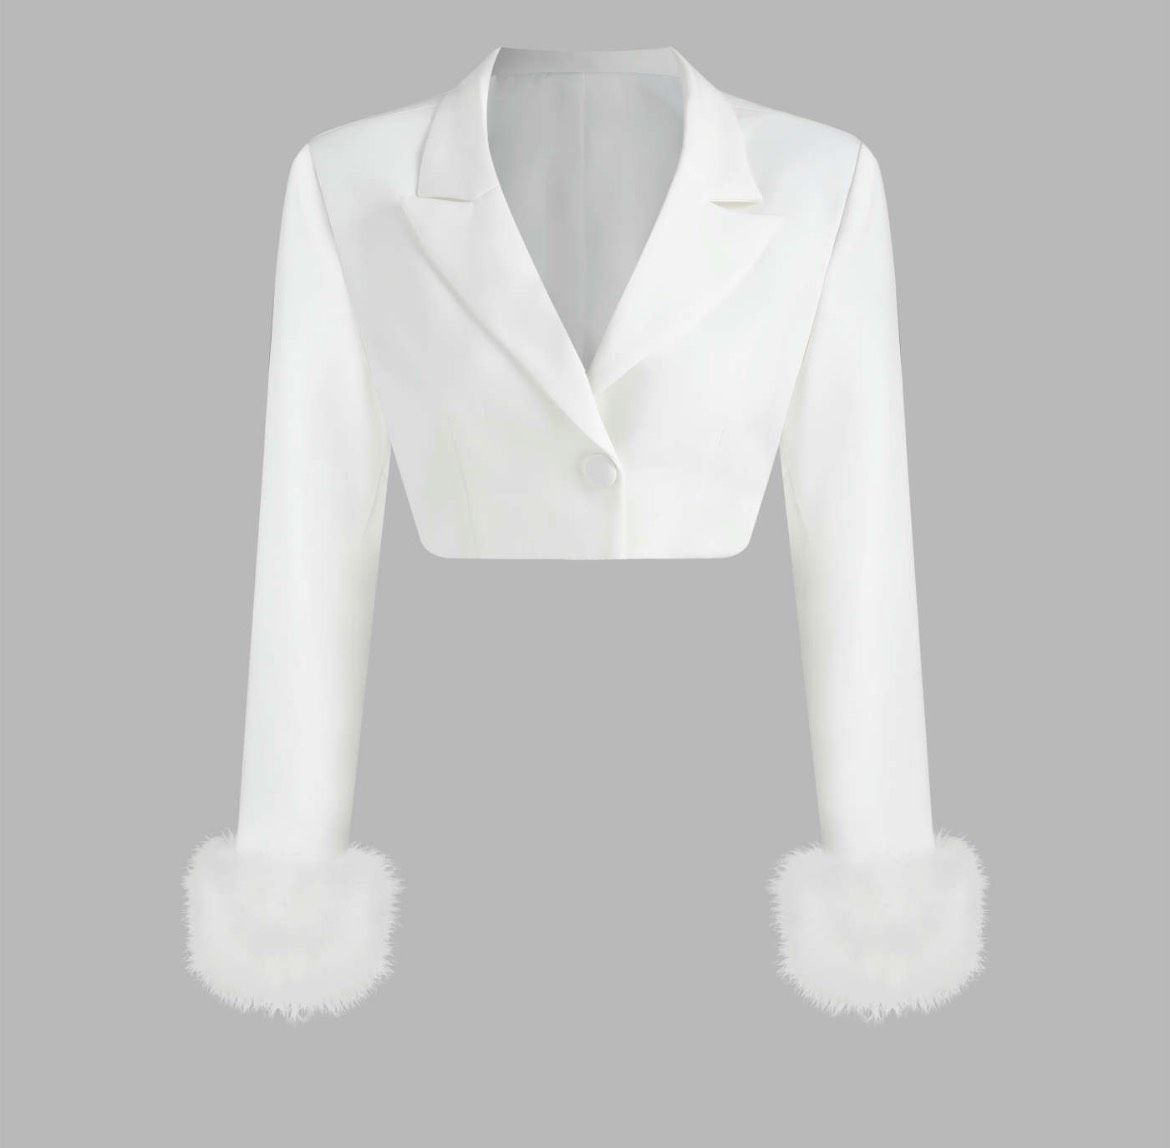 Size 0 Nightclub Blazer White Cocktail Dress on Queenly